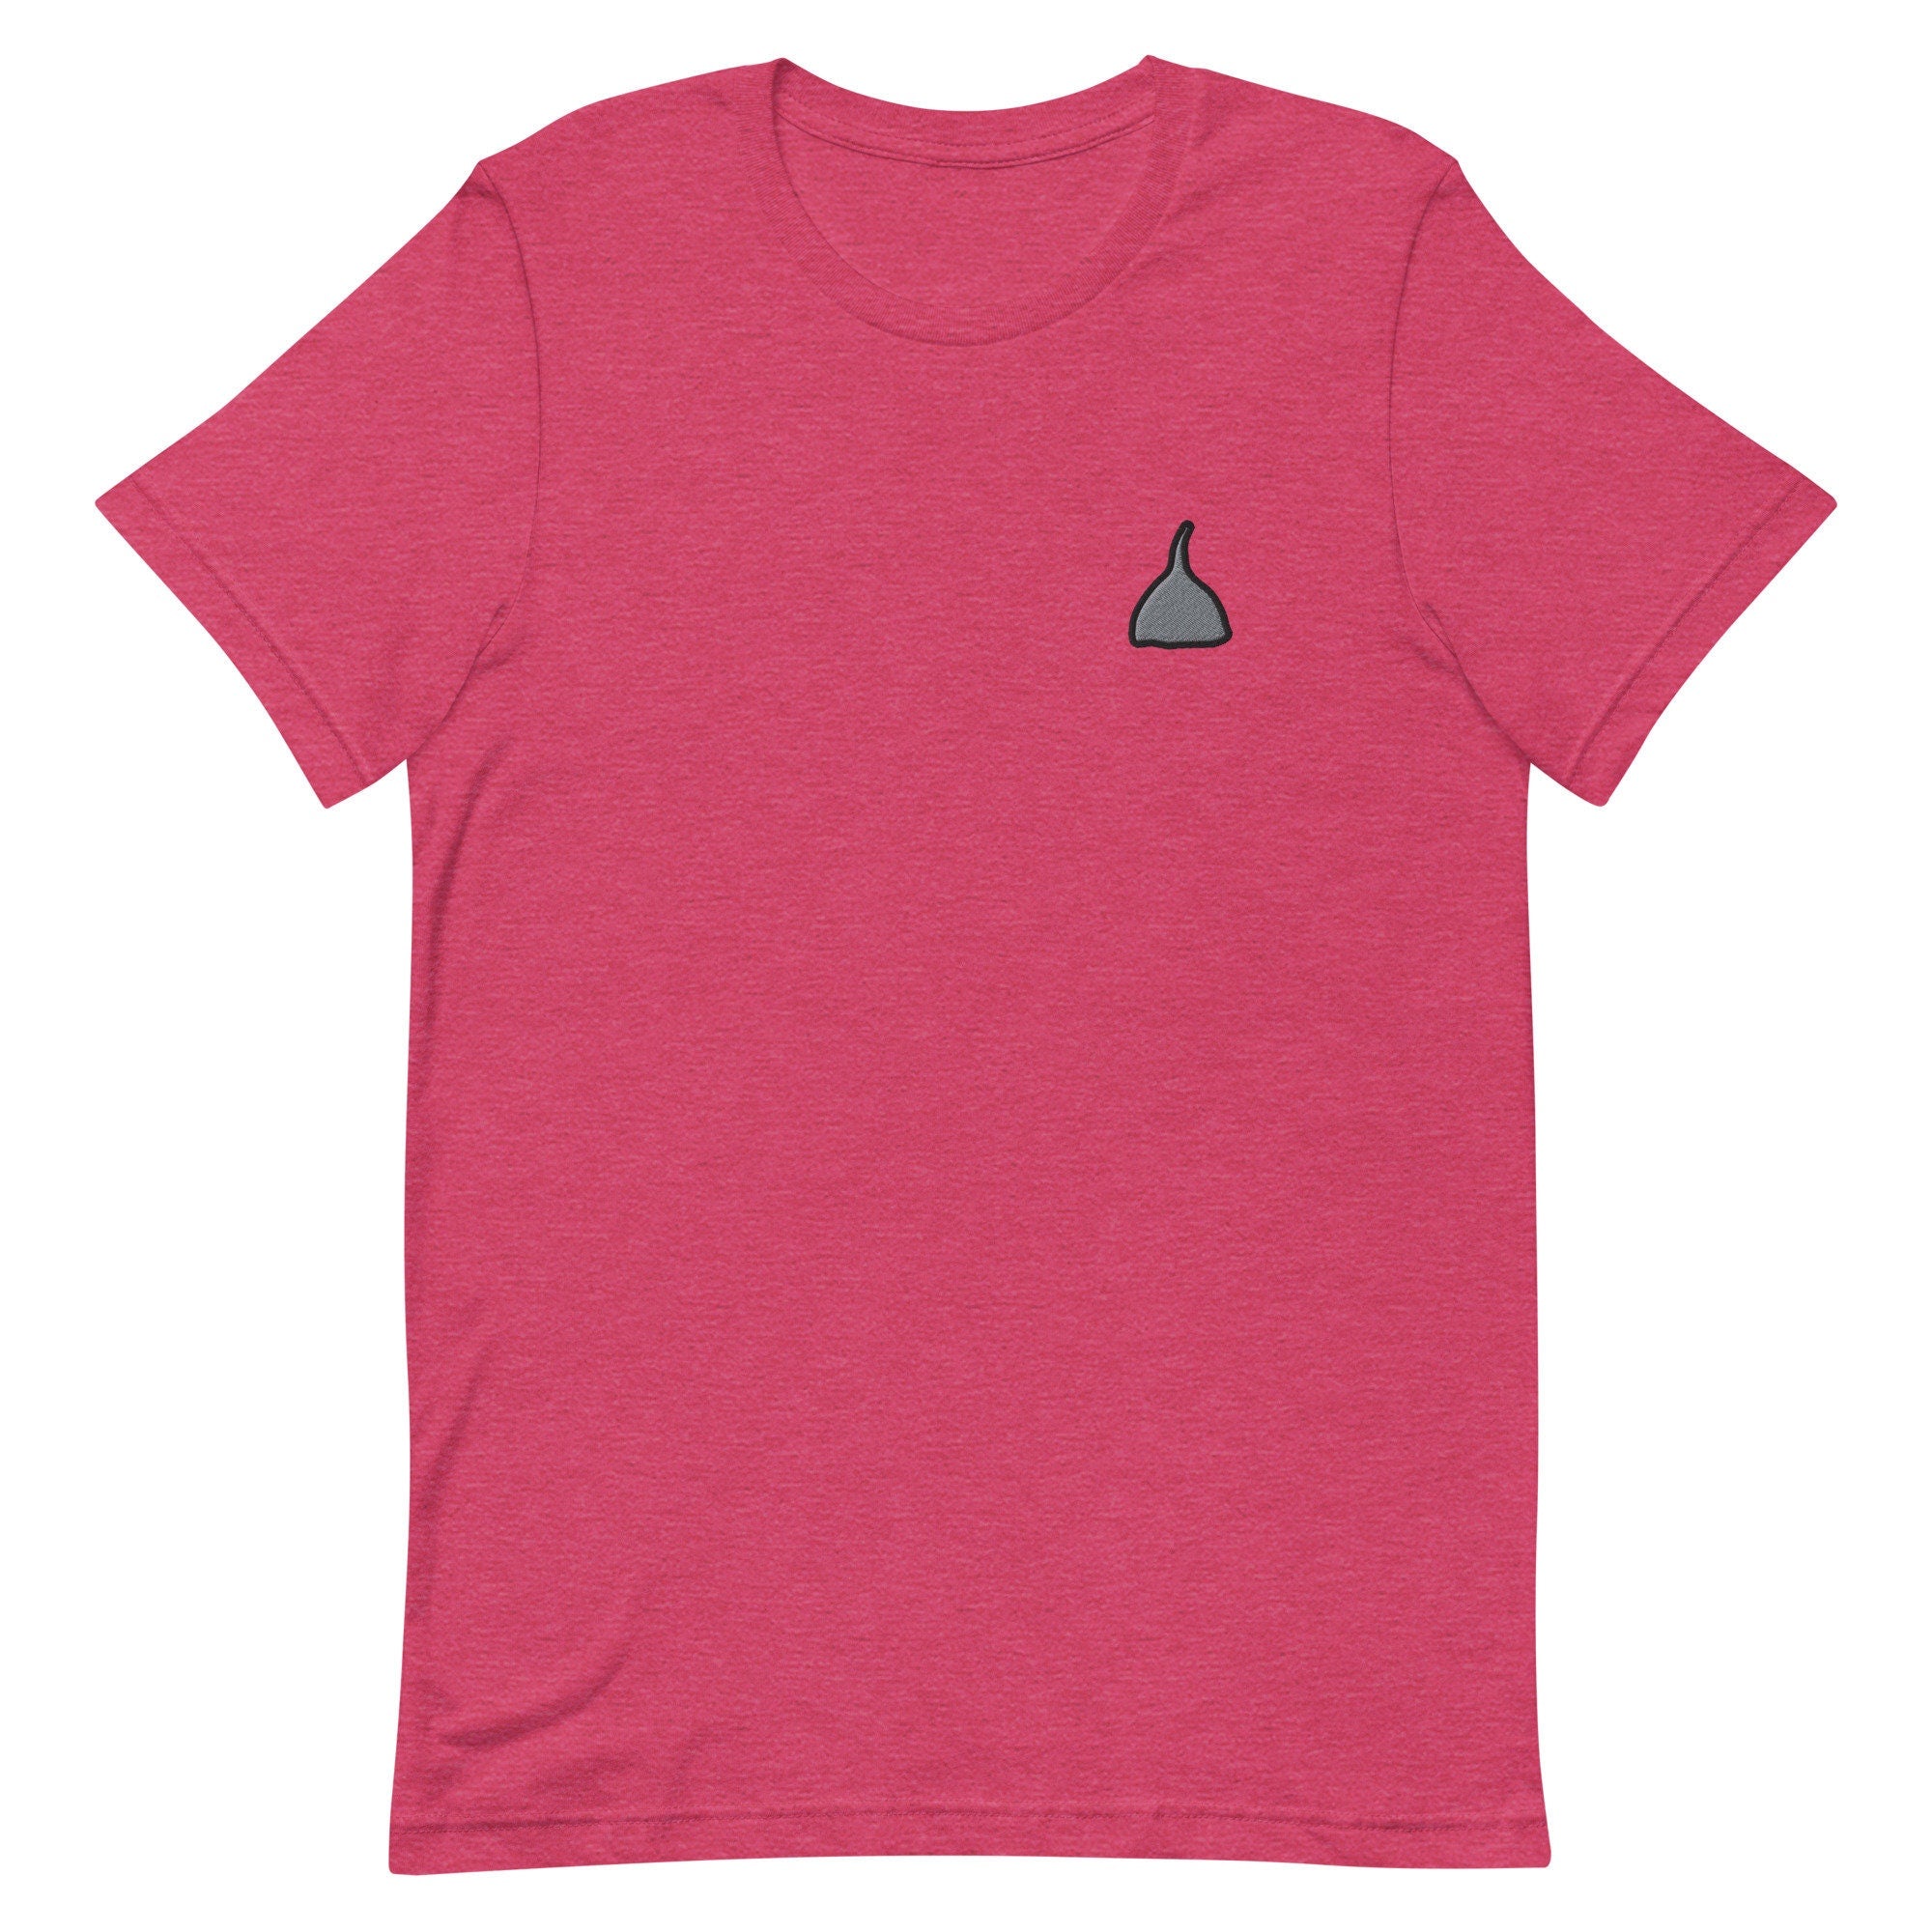 Tin Foil Hat Premium Men's T-Shirt, Embroidered Men's T-Shirt Gift for Boyfriend, Men's Short Sleeve Shirt - Multiple Colors